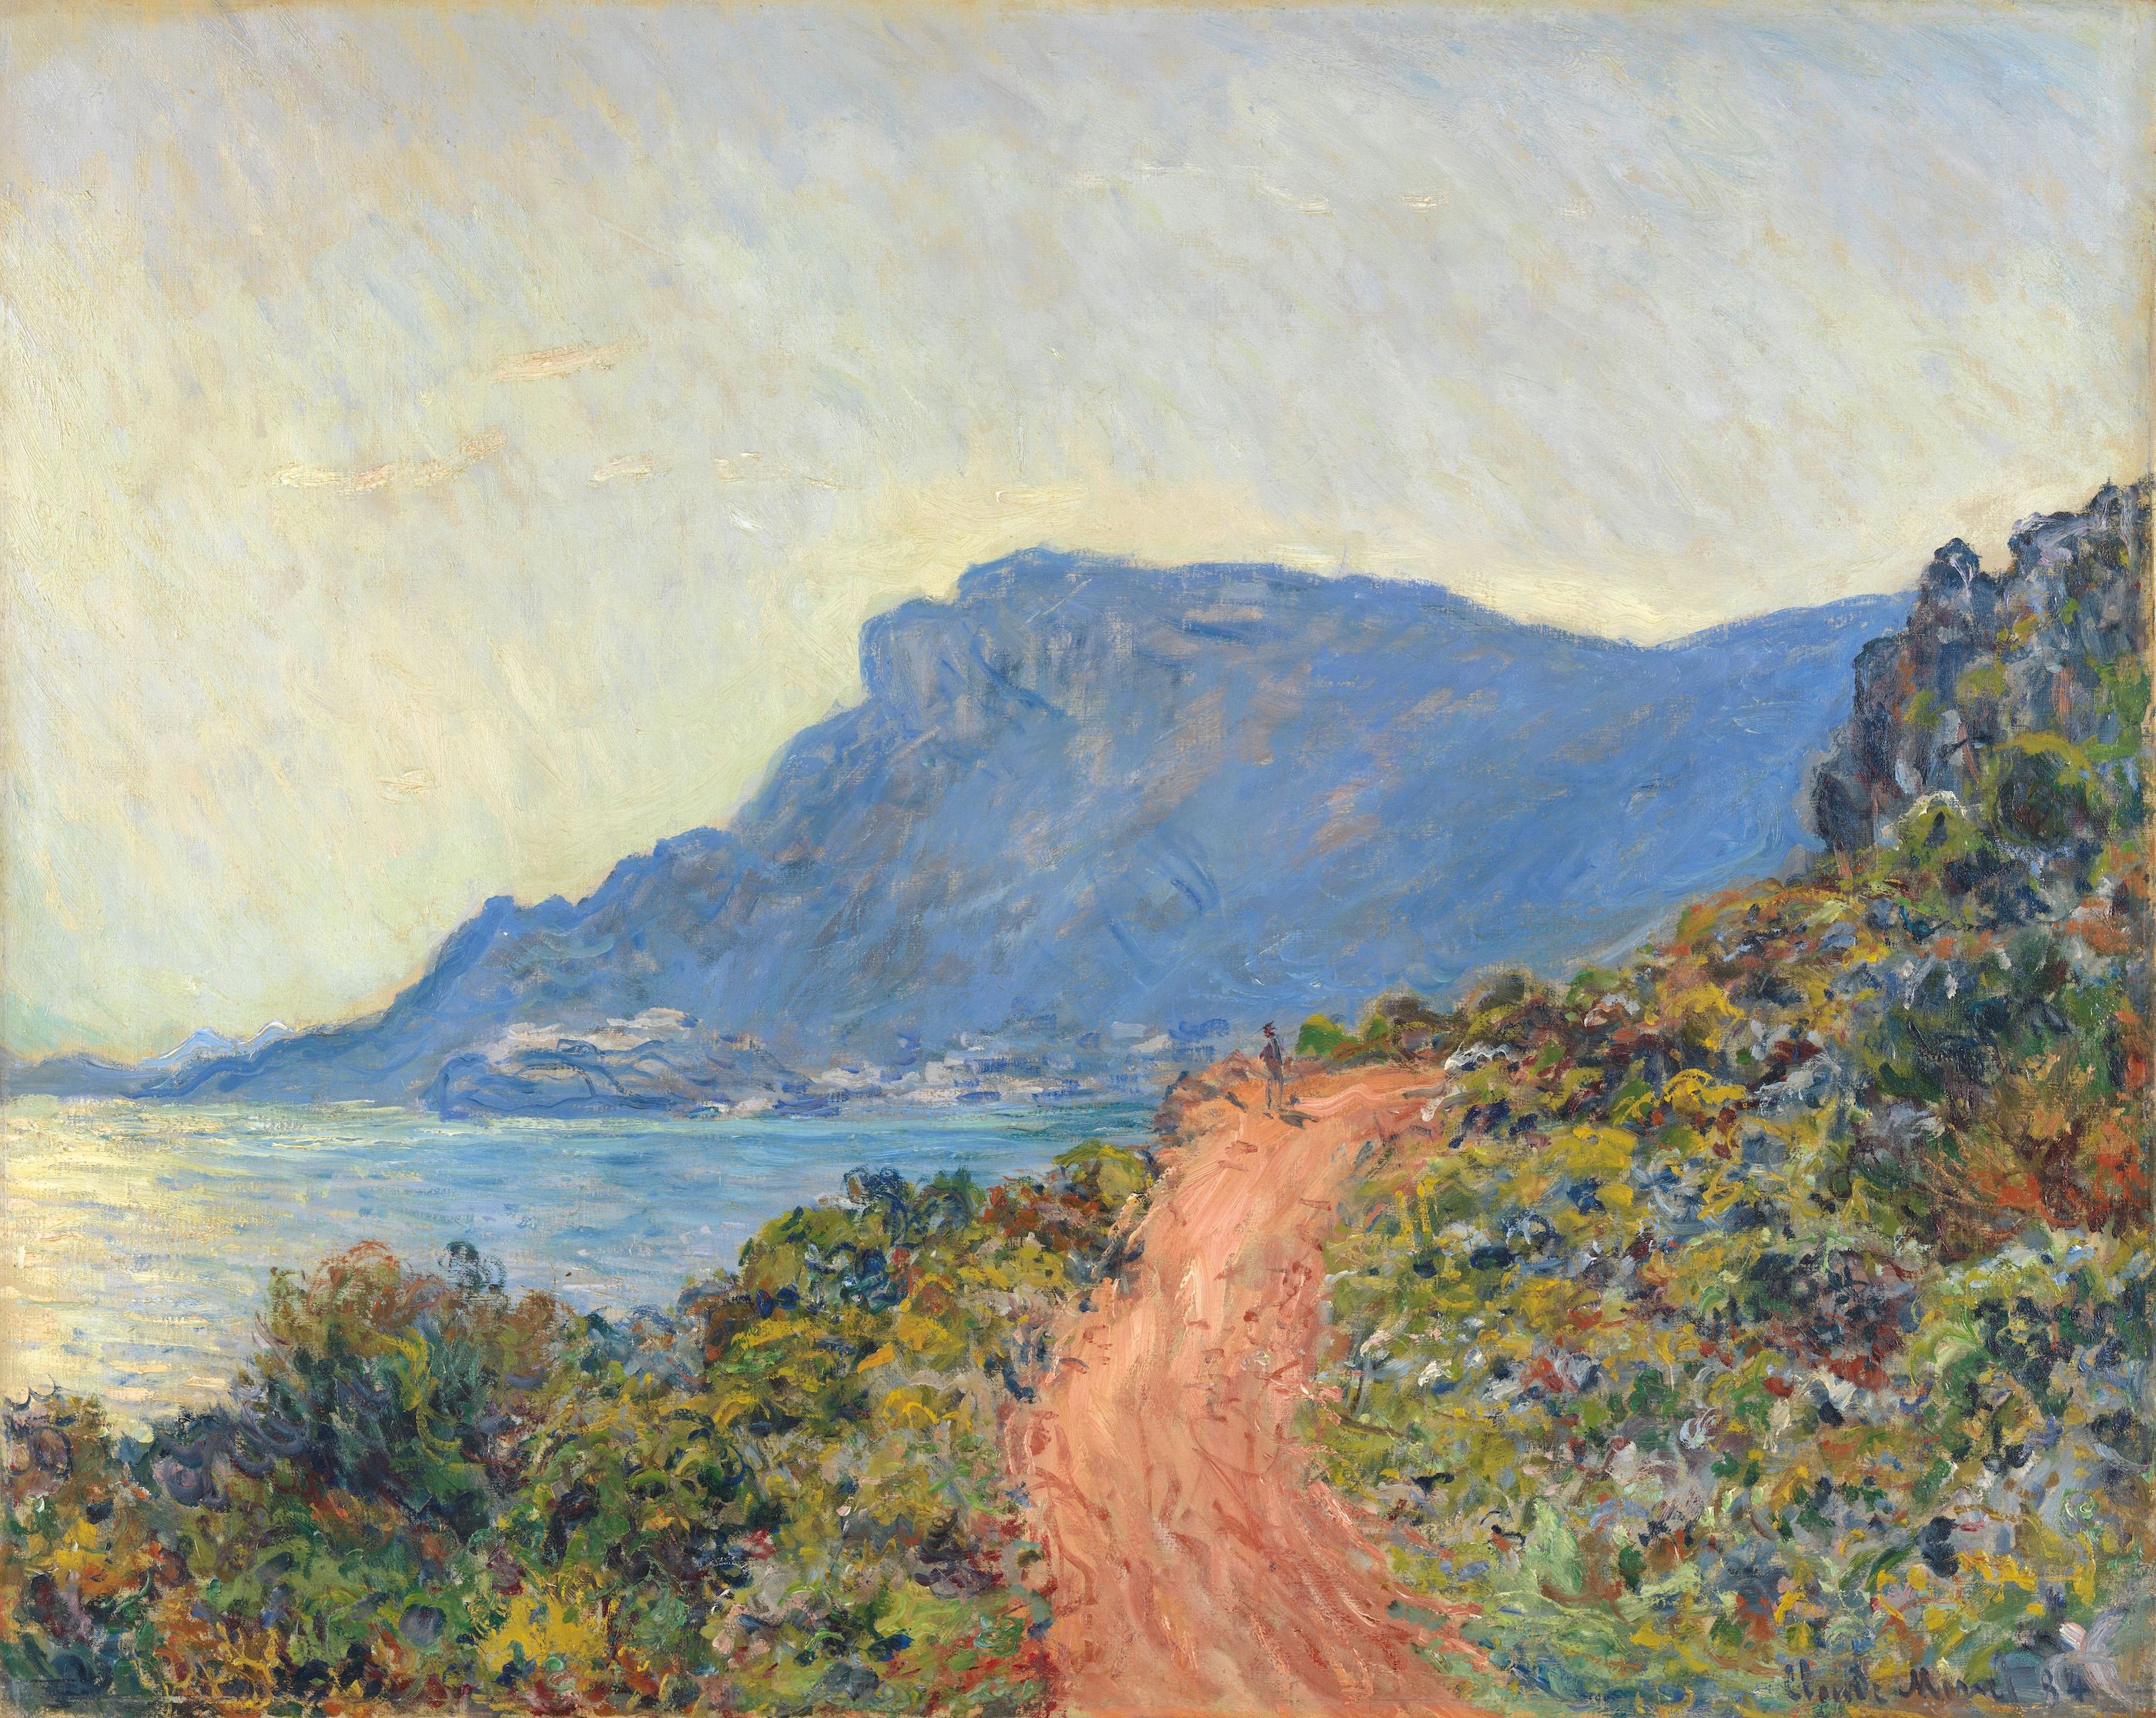 摩納哥附近的濱海大道 by Claude Monet - 1884 年 - 75 × 94 釐米 